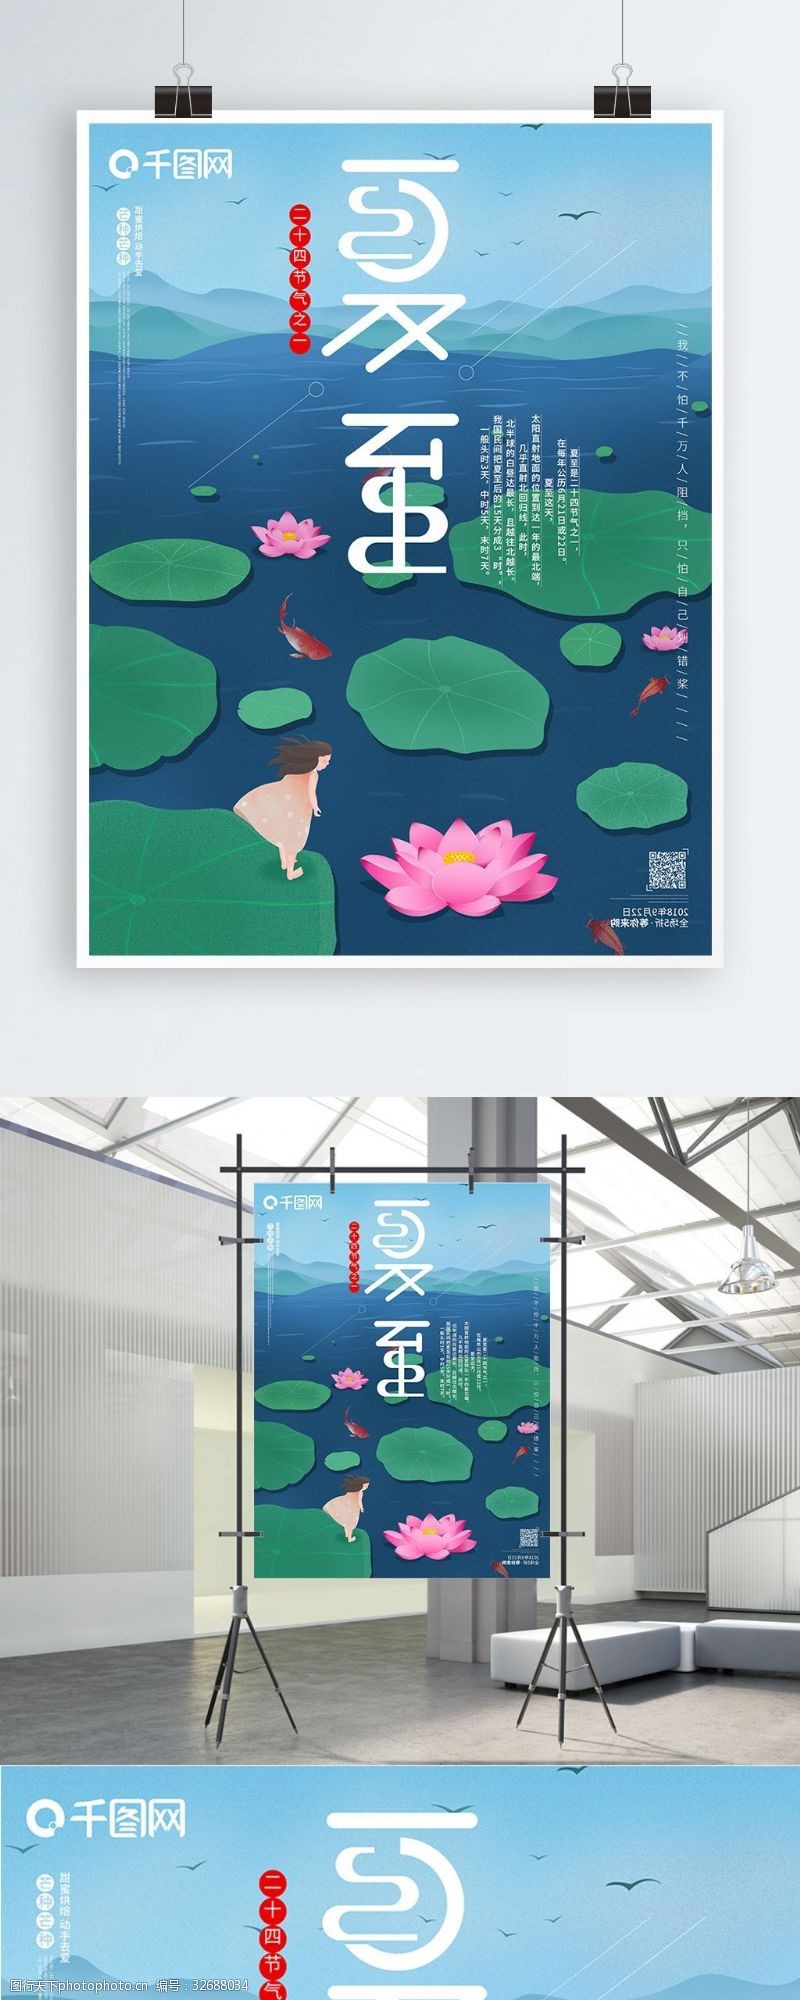 24节气之立夏夏至立夏24节气之一中国传统节日原创海报